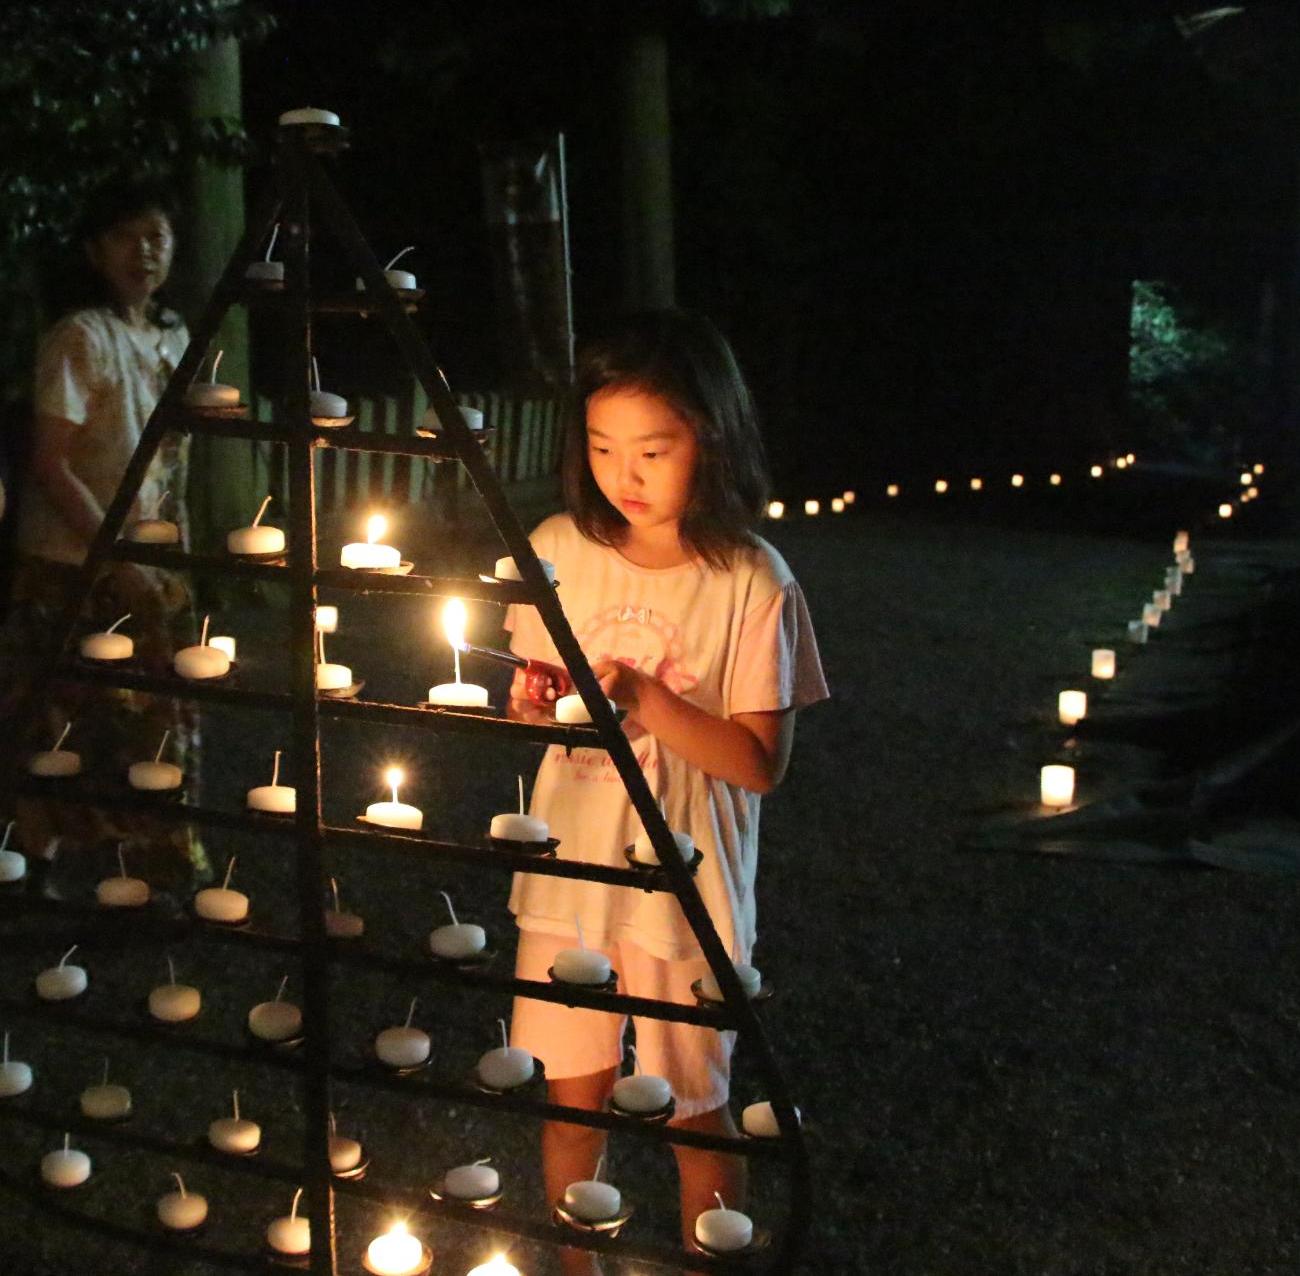 ツリー状に並べられた灯明に明かりをつける女の子の写真